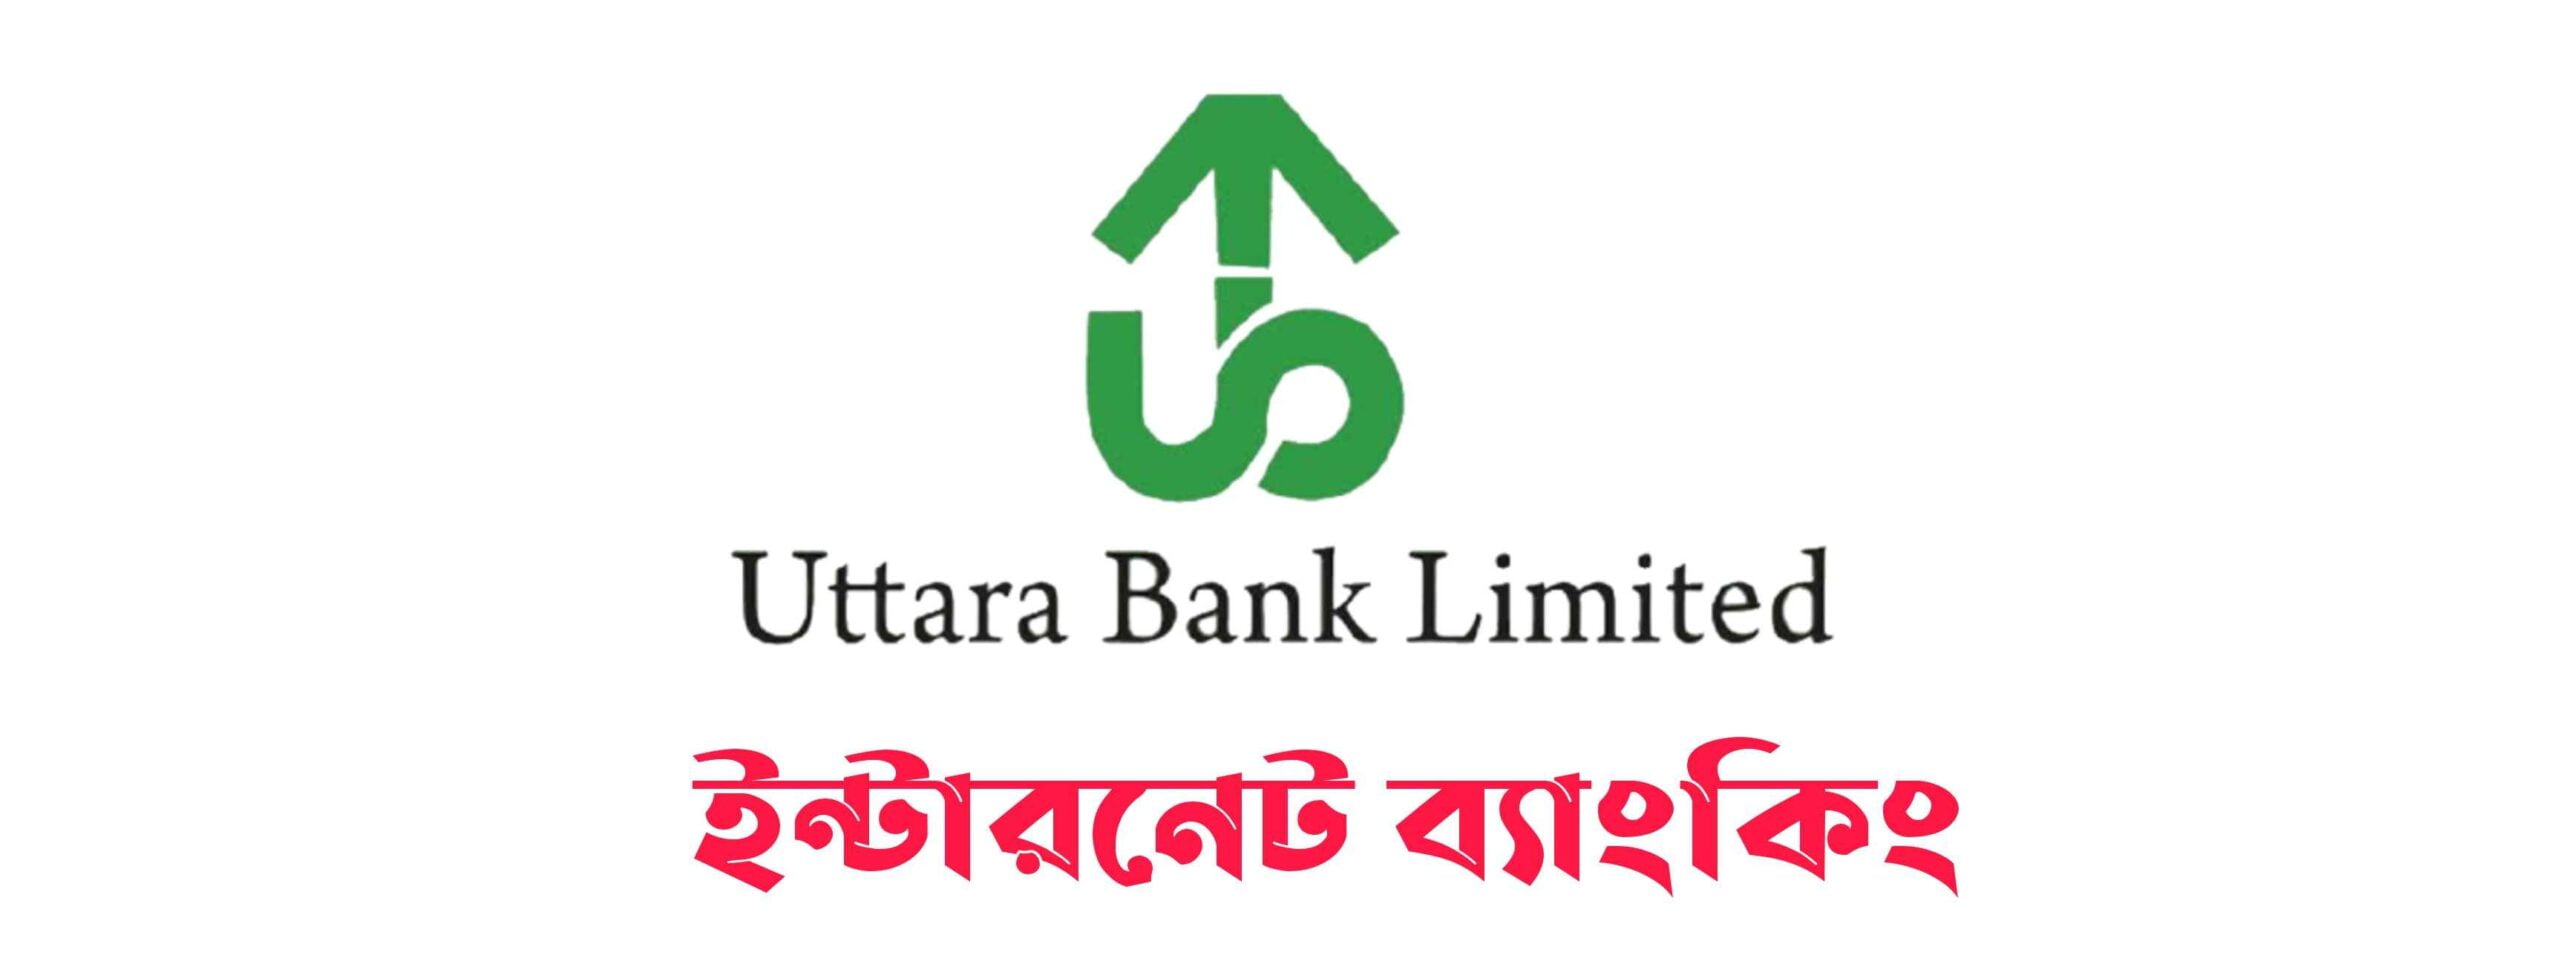 উত্তরা ব্যাংক ইন্টারনেট ব্যাংকিং রেজিস্ট্রেশন | Uttara Bank Internet Banking